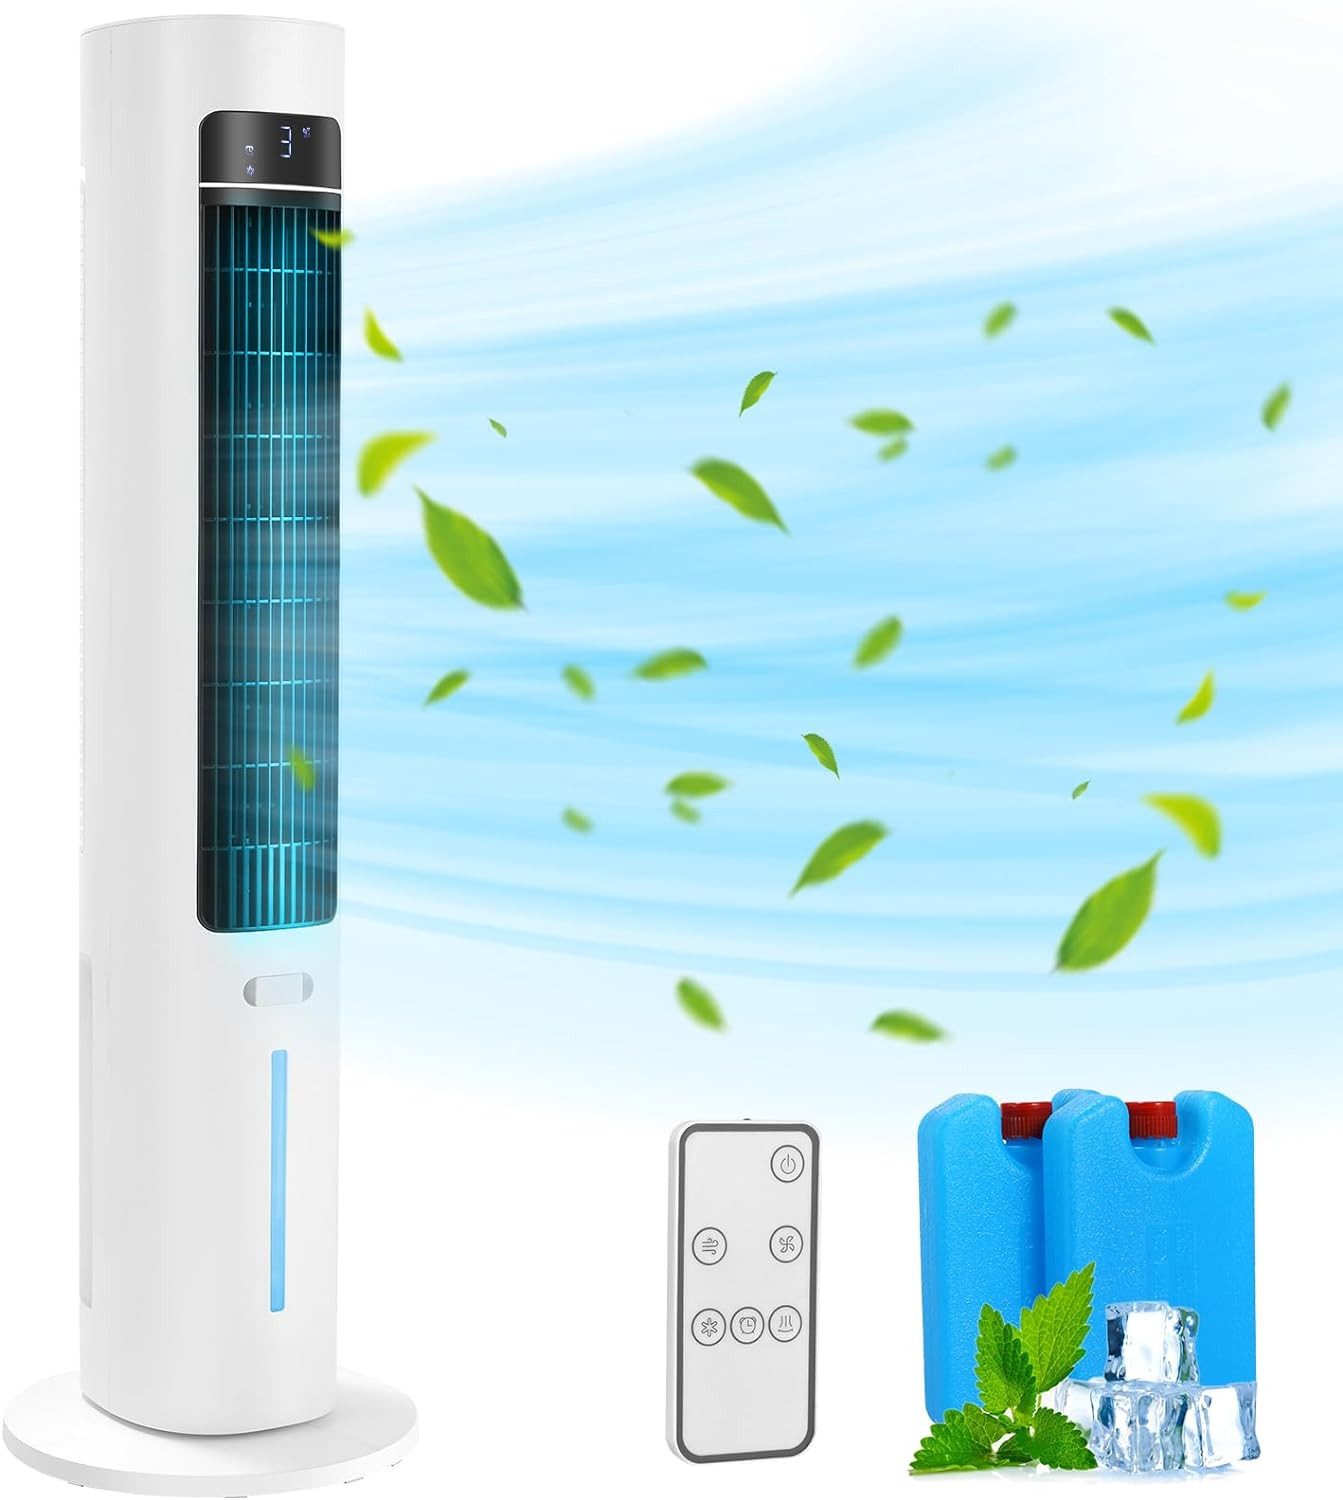 TLGREEN Turmventilator Aroma-Funktion mit Eiskristallbox,LED-Anzeige, 50°-Oszillation,12-Stunden-Timer,für Schlafzimmer,Wohnzimmer,Büro,Weiß